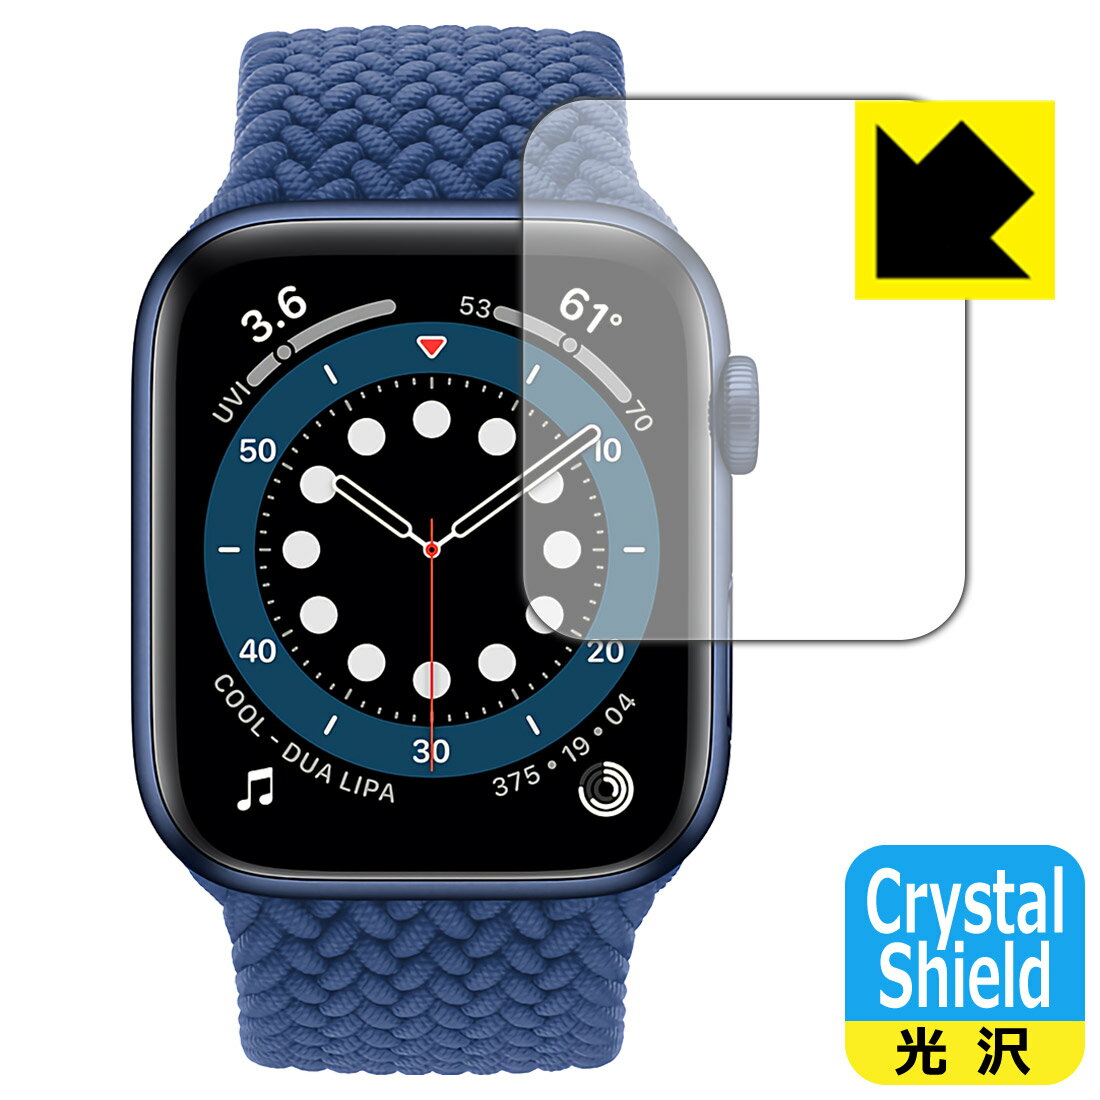 ●対応機種 : Apple Watch Series 6 / Apple Watch SE (44mm用)●内容量 : 3枚●※この機器は周辺部が曲面となったラウンド仕様のため、保護フィルムを端まで貼ることができません。機器の端まで保護したい方は、「Flexible Shield」をご購入ください。●「Crystal Shield」は高い透明度と光沢感で、保護フィルムを貼っていないかのようなクリア感のある『光沢タイプの保護フィルム』●安心の国産素材を使用。日本国内の自社工場で製造し出荷しています。【ポスト投函送料無料】商品は【ポスト投函発送 (追跡可能メール便)】で発送します。お急ぎ、配達日時を指定されたい方は以下のクーポンを同時購入ください。【お急ぎ便クーポン】　プラス110円(税込)で速達扱いでの発送。お届けはポストへの投函となります。【配達日時指定クーポン】　プラス550円(税込)で配達日時を指定し、宅配便で発送させていただきます。【お急ぎ便クーポン】はこちらをクリック【配達日時指定クーポン】はこちらをクリック 　 貼っていることを意識させないほどの高い透明度に、高級感あふれる光沢・クリアな仕上げとなります。 動画視聴や画像編集など、機器本来の発色を重視したい方におすすめです。 ハードコート加工がされており、キズや擦れに強くなっています。簡単にキズがつかず長くご利用いただけます。 表面はフッ素コーティングがされており、皮脂や汚れがつきにくく、また、落ちやすくなっています。 指滑りもなめらかで、快適な使用感です。 油性マジックのインクもはじきますので簡単に拭き取れます。 接着面は気泡の入りにくい特殊な自己吸着タイプです。素材に柔軟性があり、貼り付け作業も簡単にできます。また、はがすときにガラス製フィルムのように割れてしまうことはありません。 貼り直しが何度でもできるので、正しい位置へ貼り付けられるまでやり直すことができます。 抗菌加工によりフィルム表面の菌の繁殖を抑えることができます。清潔な画面を保ちたい方におすすめです。 ※抗菌率99.9％ / JIS Z2801 抗菌性試験方法による評価 最高級グレードの国産素材を日本国内の弊社工場で加工している完全な Made in Japan です。安心の品質をお届けします。 使用上の注意 ●本製品は機器の画面をキズなどから保護するフィルムです。他の目的にはご使用にならないでください。 ●本製品は液晶保護および機器本体を完全に保護することを保証するものではありません。機器の破損、損傷、故障、その他損害につきましては一切の責任を負いかねます。 ●製品の性質上、画面操作の反応が変化したり、表示等が変化して見える場合がございます。 ●貼り付け作業時の失敗(位置ズレ、汚れ、ゆがみ、折れ、気泡など)および取り外し作業時の破損、損傷などについては、一切の責任を負いかねます。 ●水に濡れた状態でのご使用は吸着力の低下などにより、保護フィルムがはがれてしまう場合がございます。防水対応の機器でご使用の場合はご注意ください。 ●アルコール類やその他薬剤を本製品に付着させないでください。表面のコーティングや吸着面が変質するおそれがあります。 ●品質向上のため、仕様などを予告なく変更する場合がございますので、予めご了承ください。